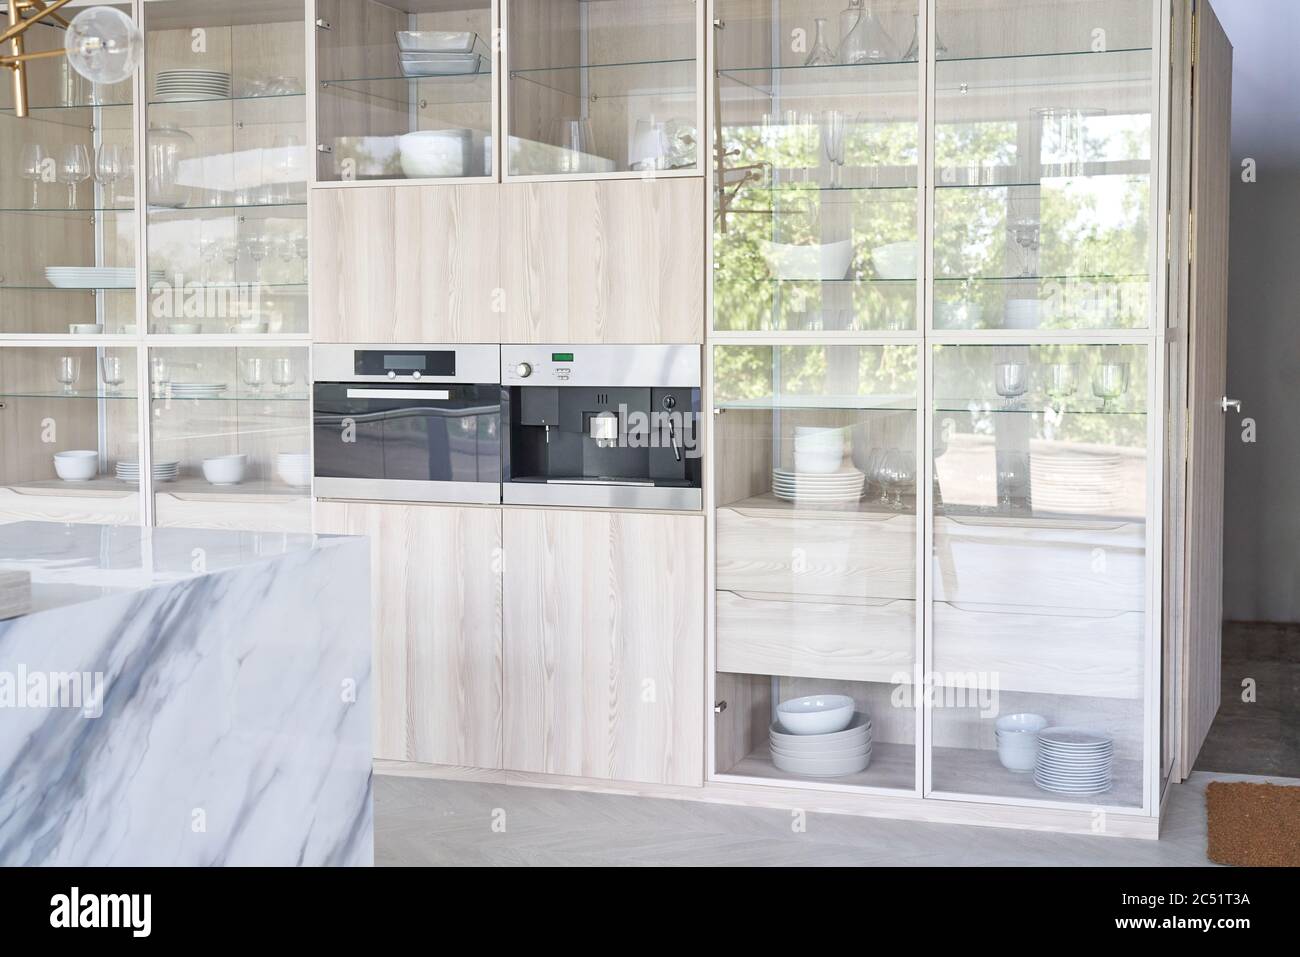 Cuisine armoire blanche avec ustensiles de cuisine et cuisinière. Intérieur de cuisine clair. Banque D'Images